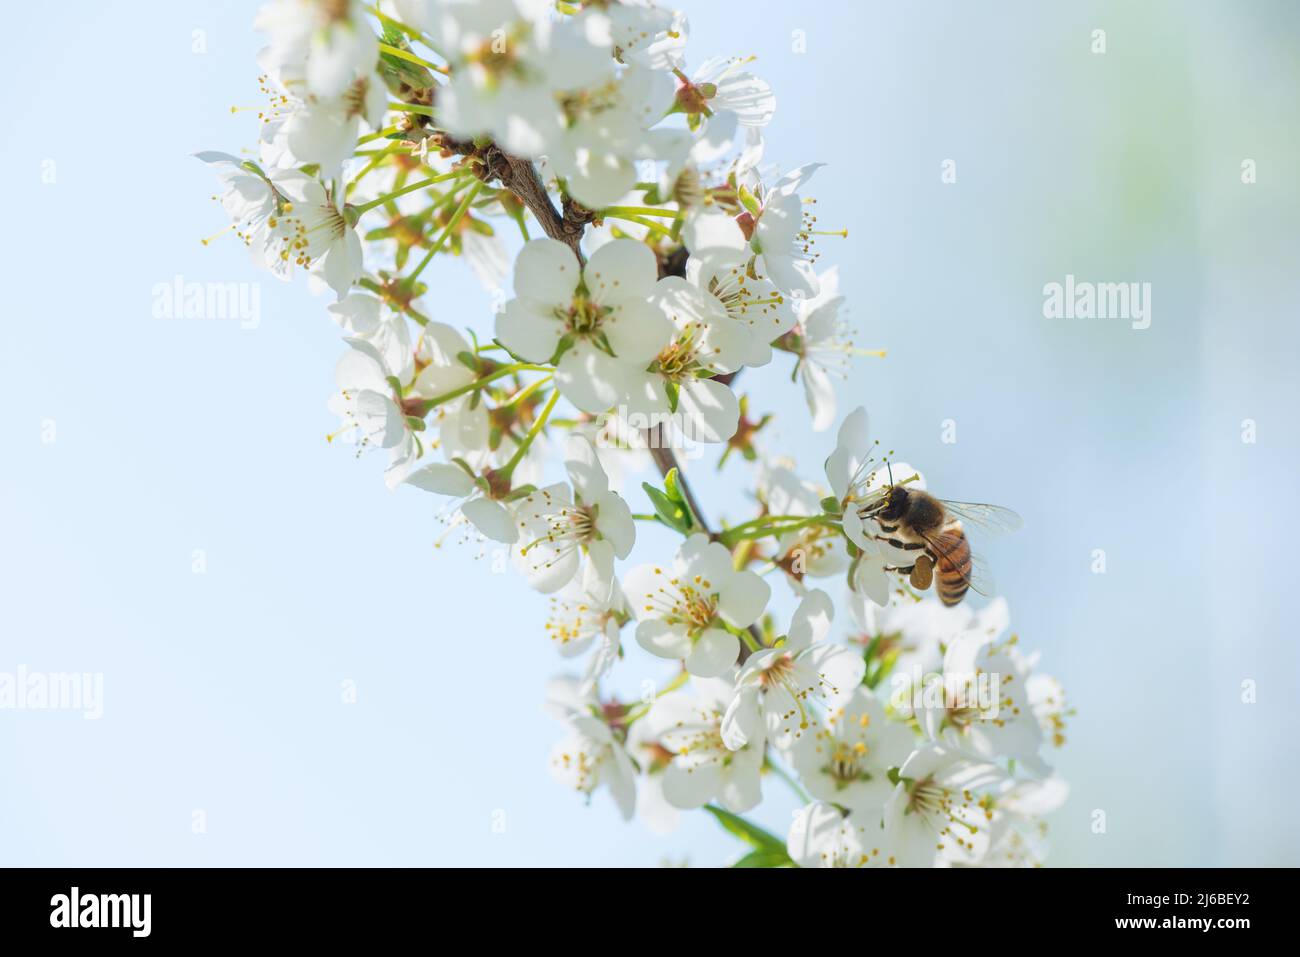 Einheimische Honigbienen füttern Nektar und bestäuben Kirschpflaumen- oder Myrobalan-Pflaumenblüten. Blühender Obstbaum im Frühling. Stockfoto